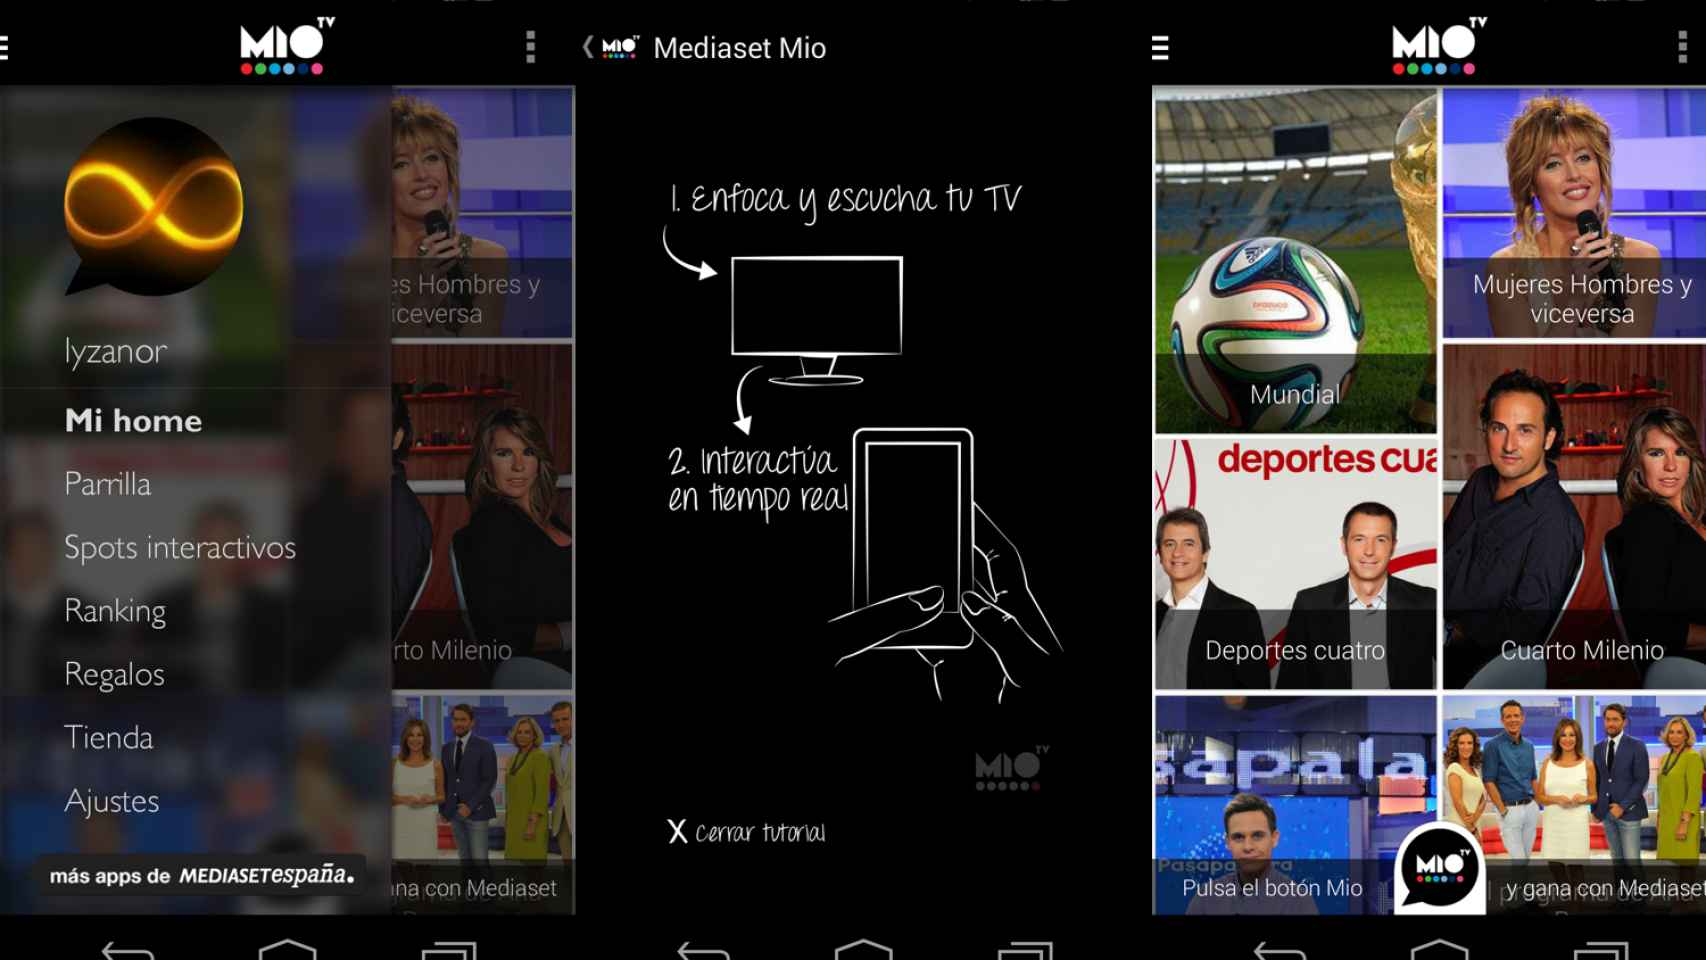 Mediaset MíoTV, llega la app de realidad aumentada para interactuar con los programas de TV